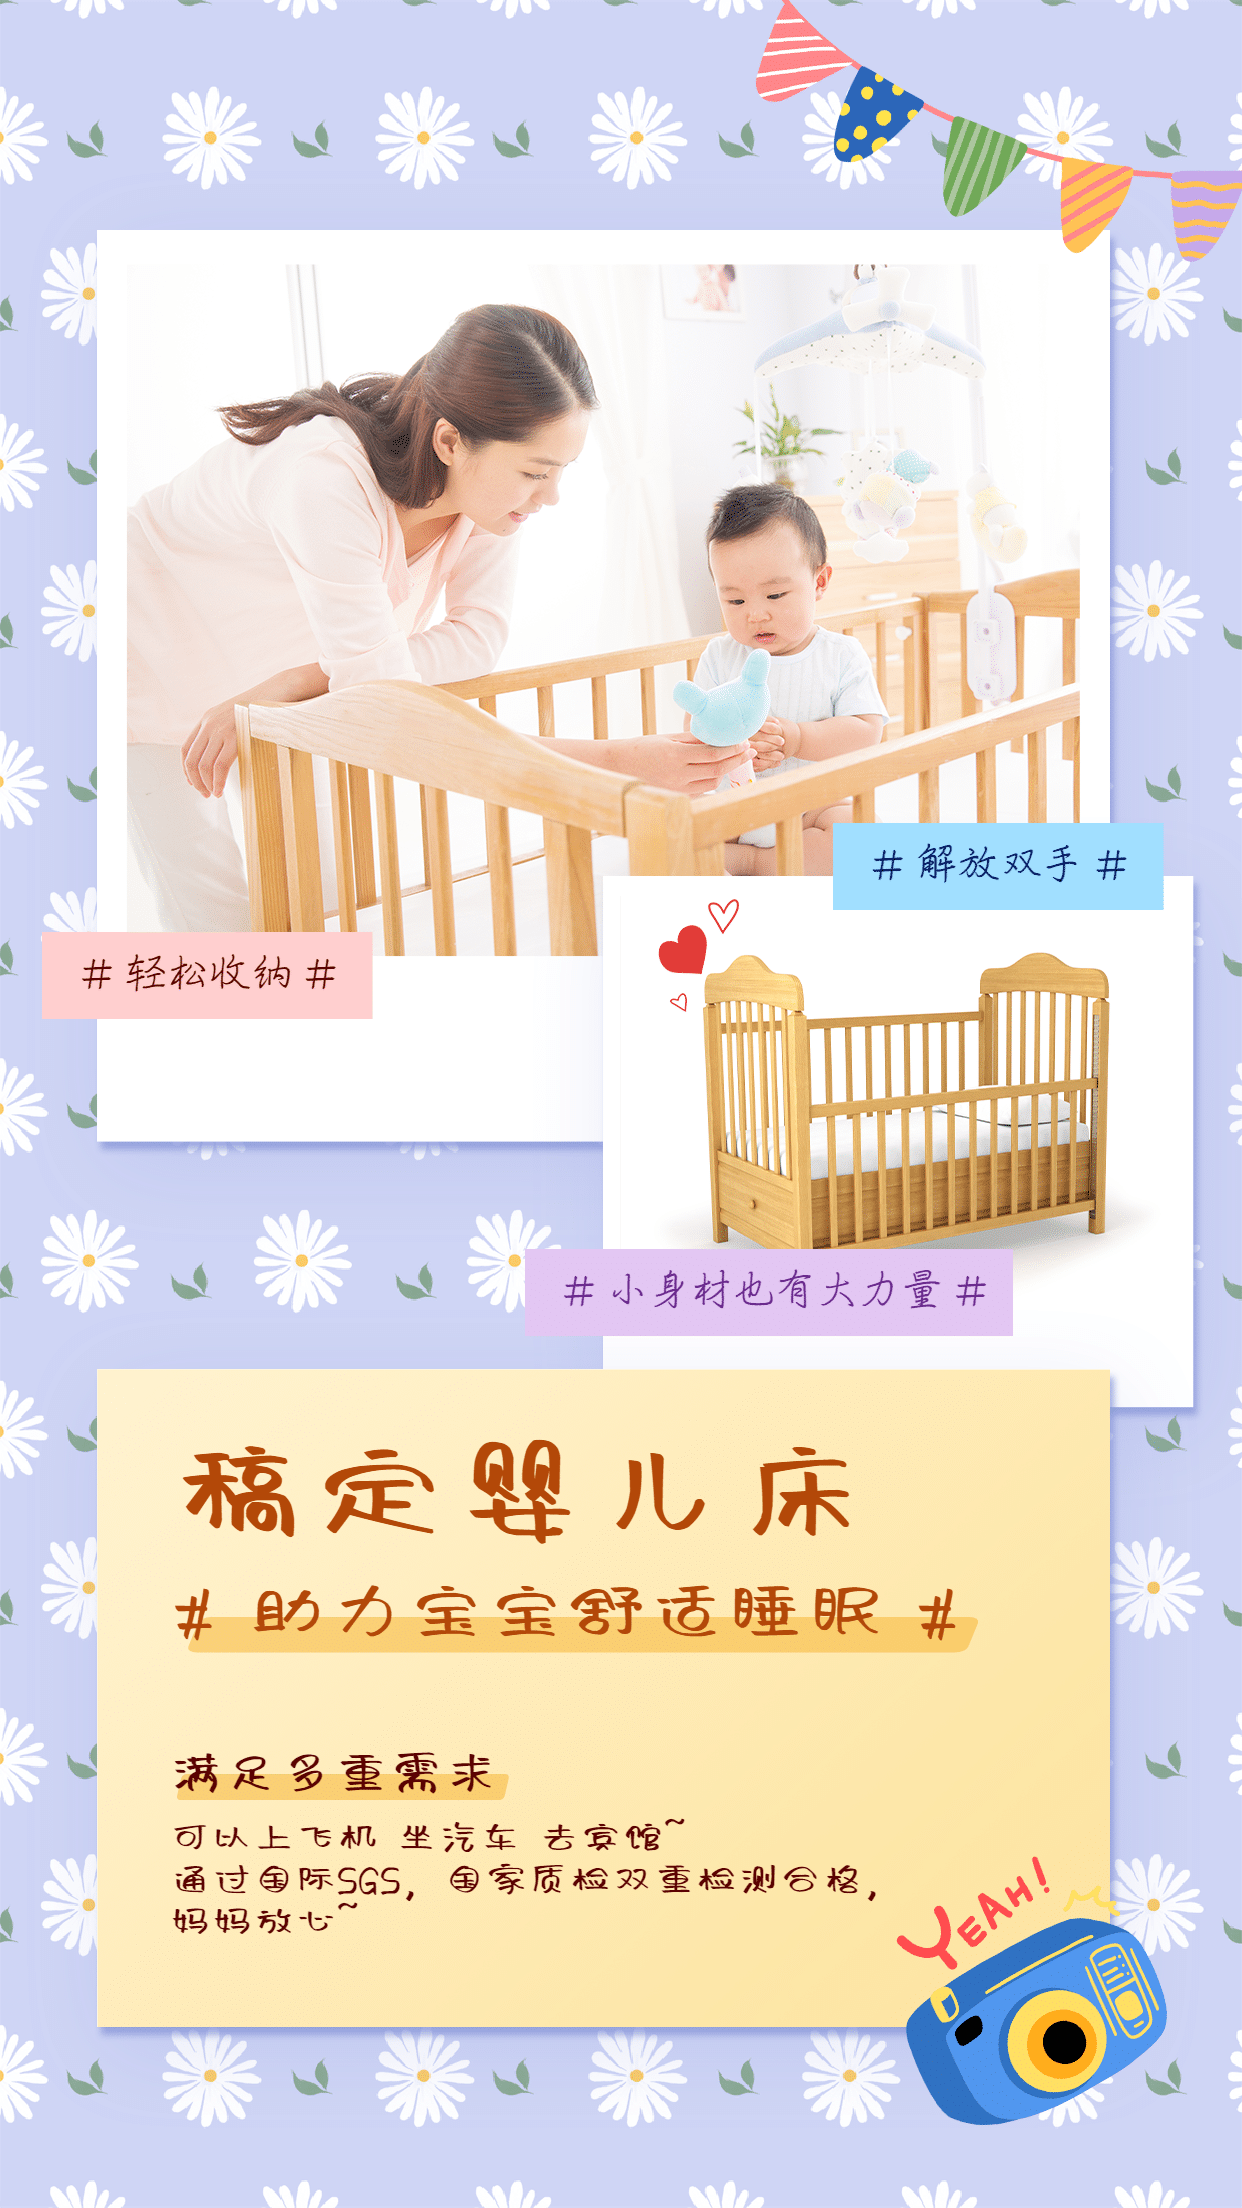 产品展示母婴亲子产品婴儿床手绘